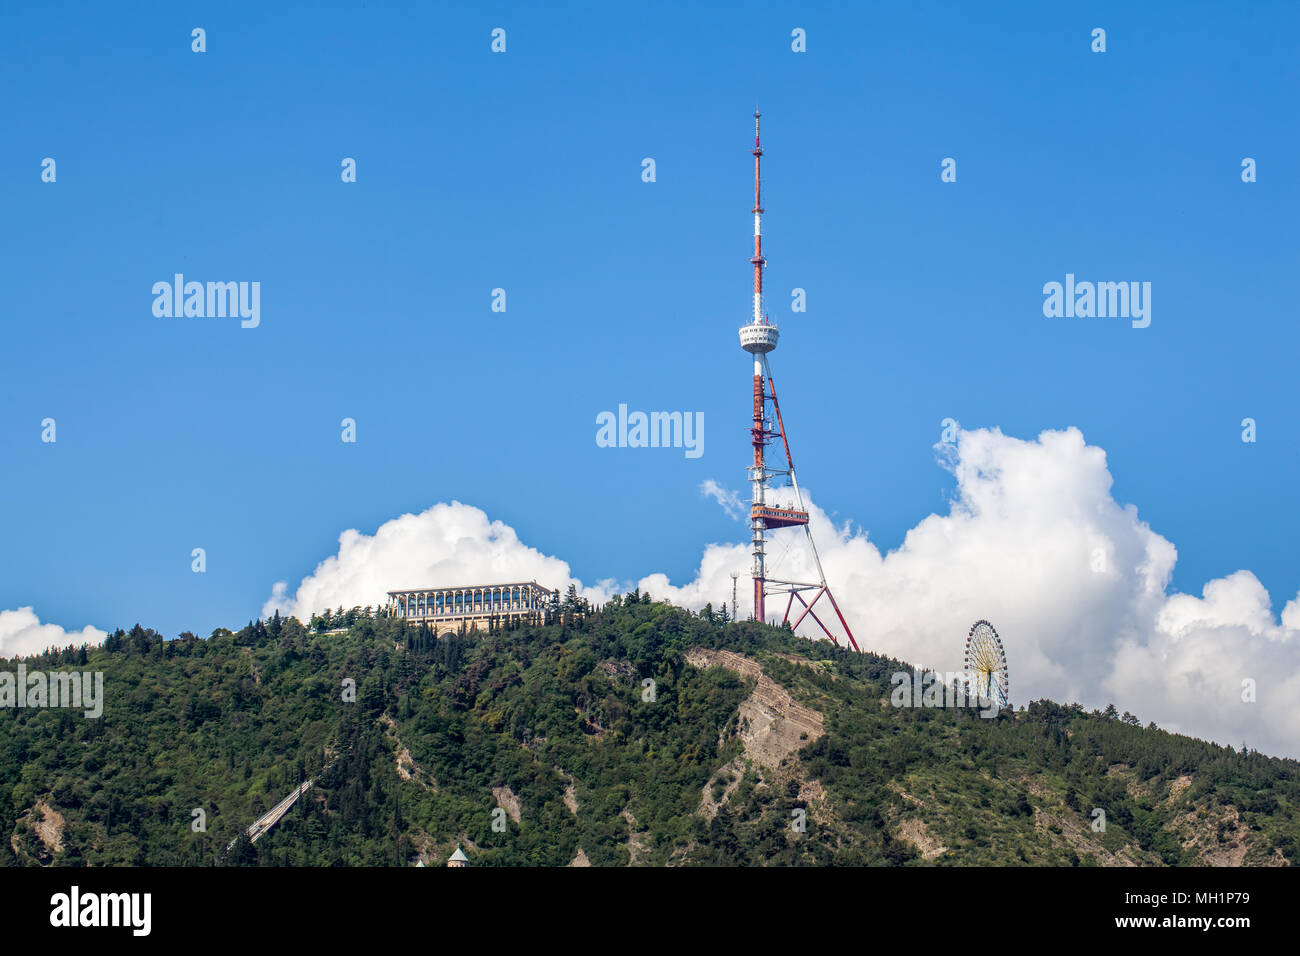 Tbilissi, la tour de télévision sur le mont Mtatsminda - Géorgie. Banque D'Images